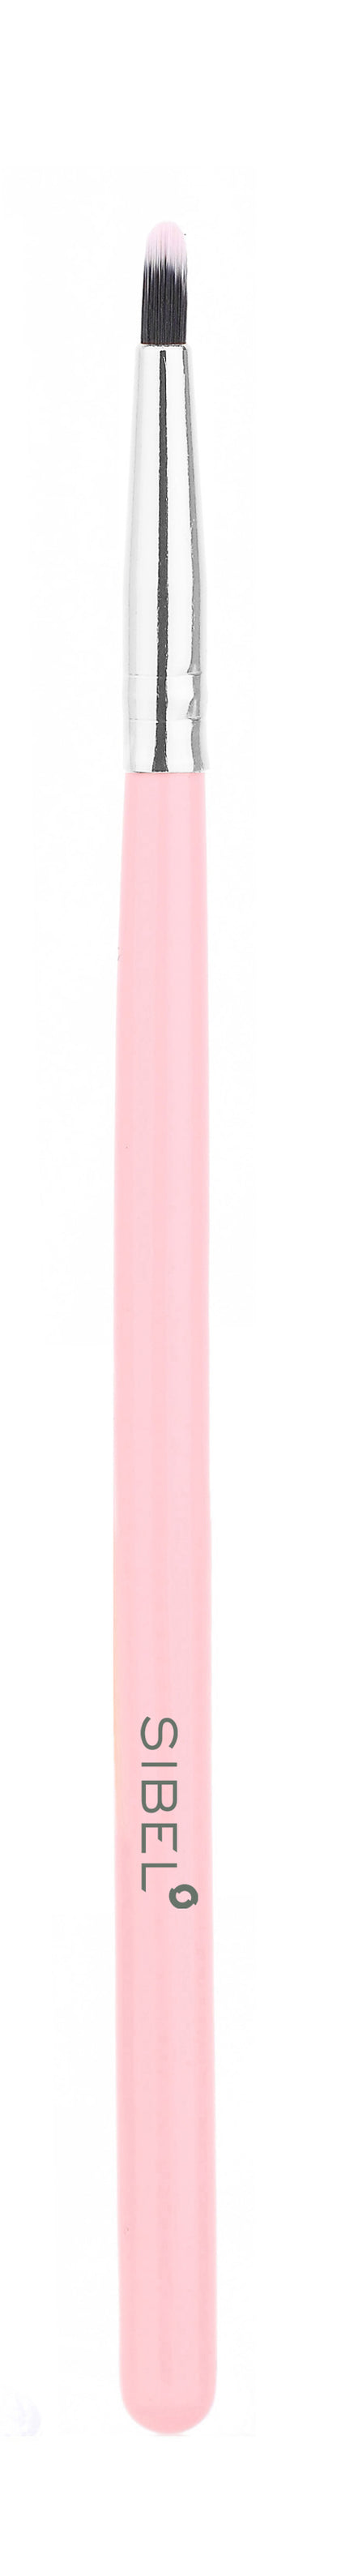 Pink Flamingo Cosmetic brushes 11pcs